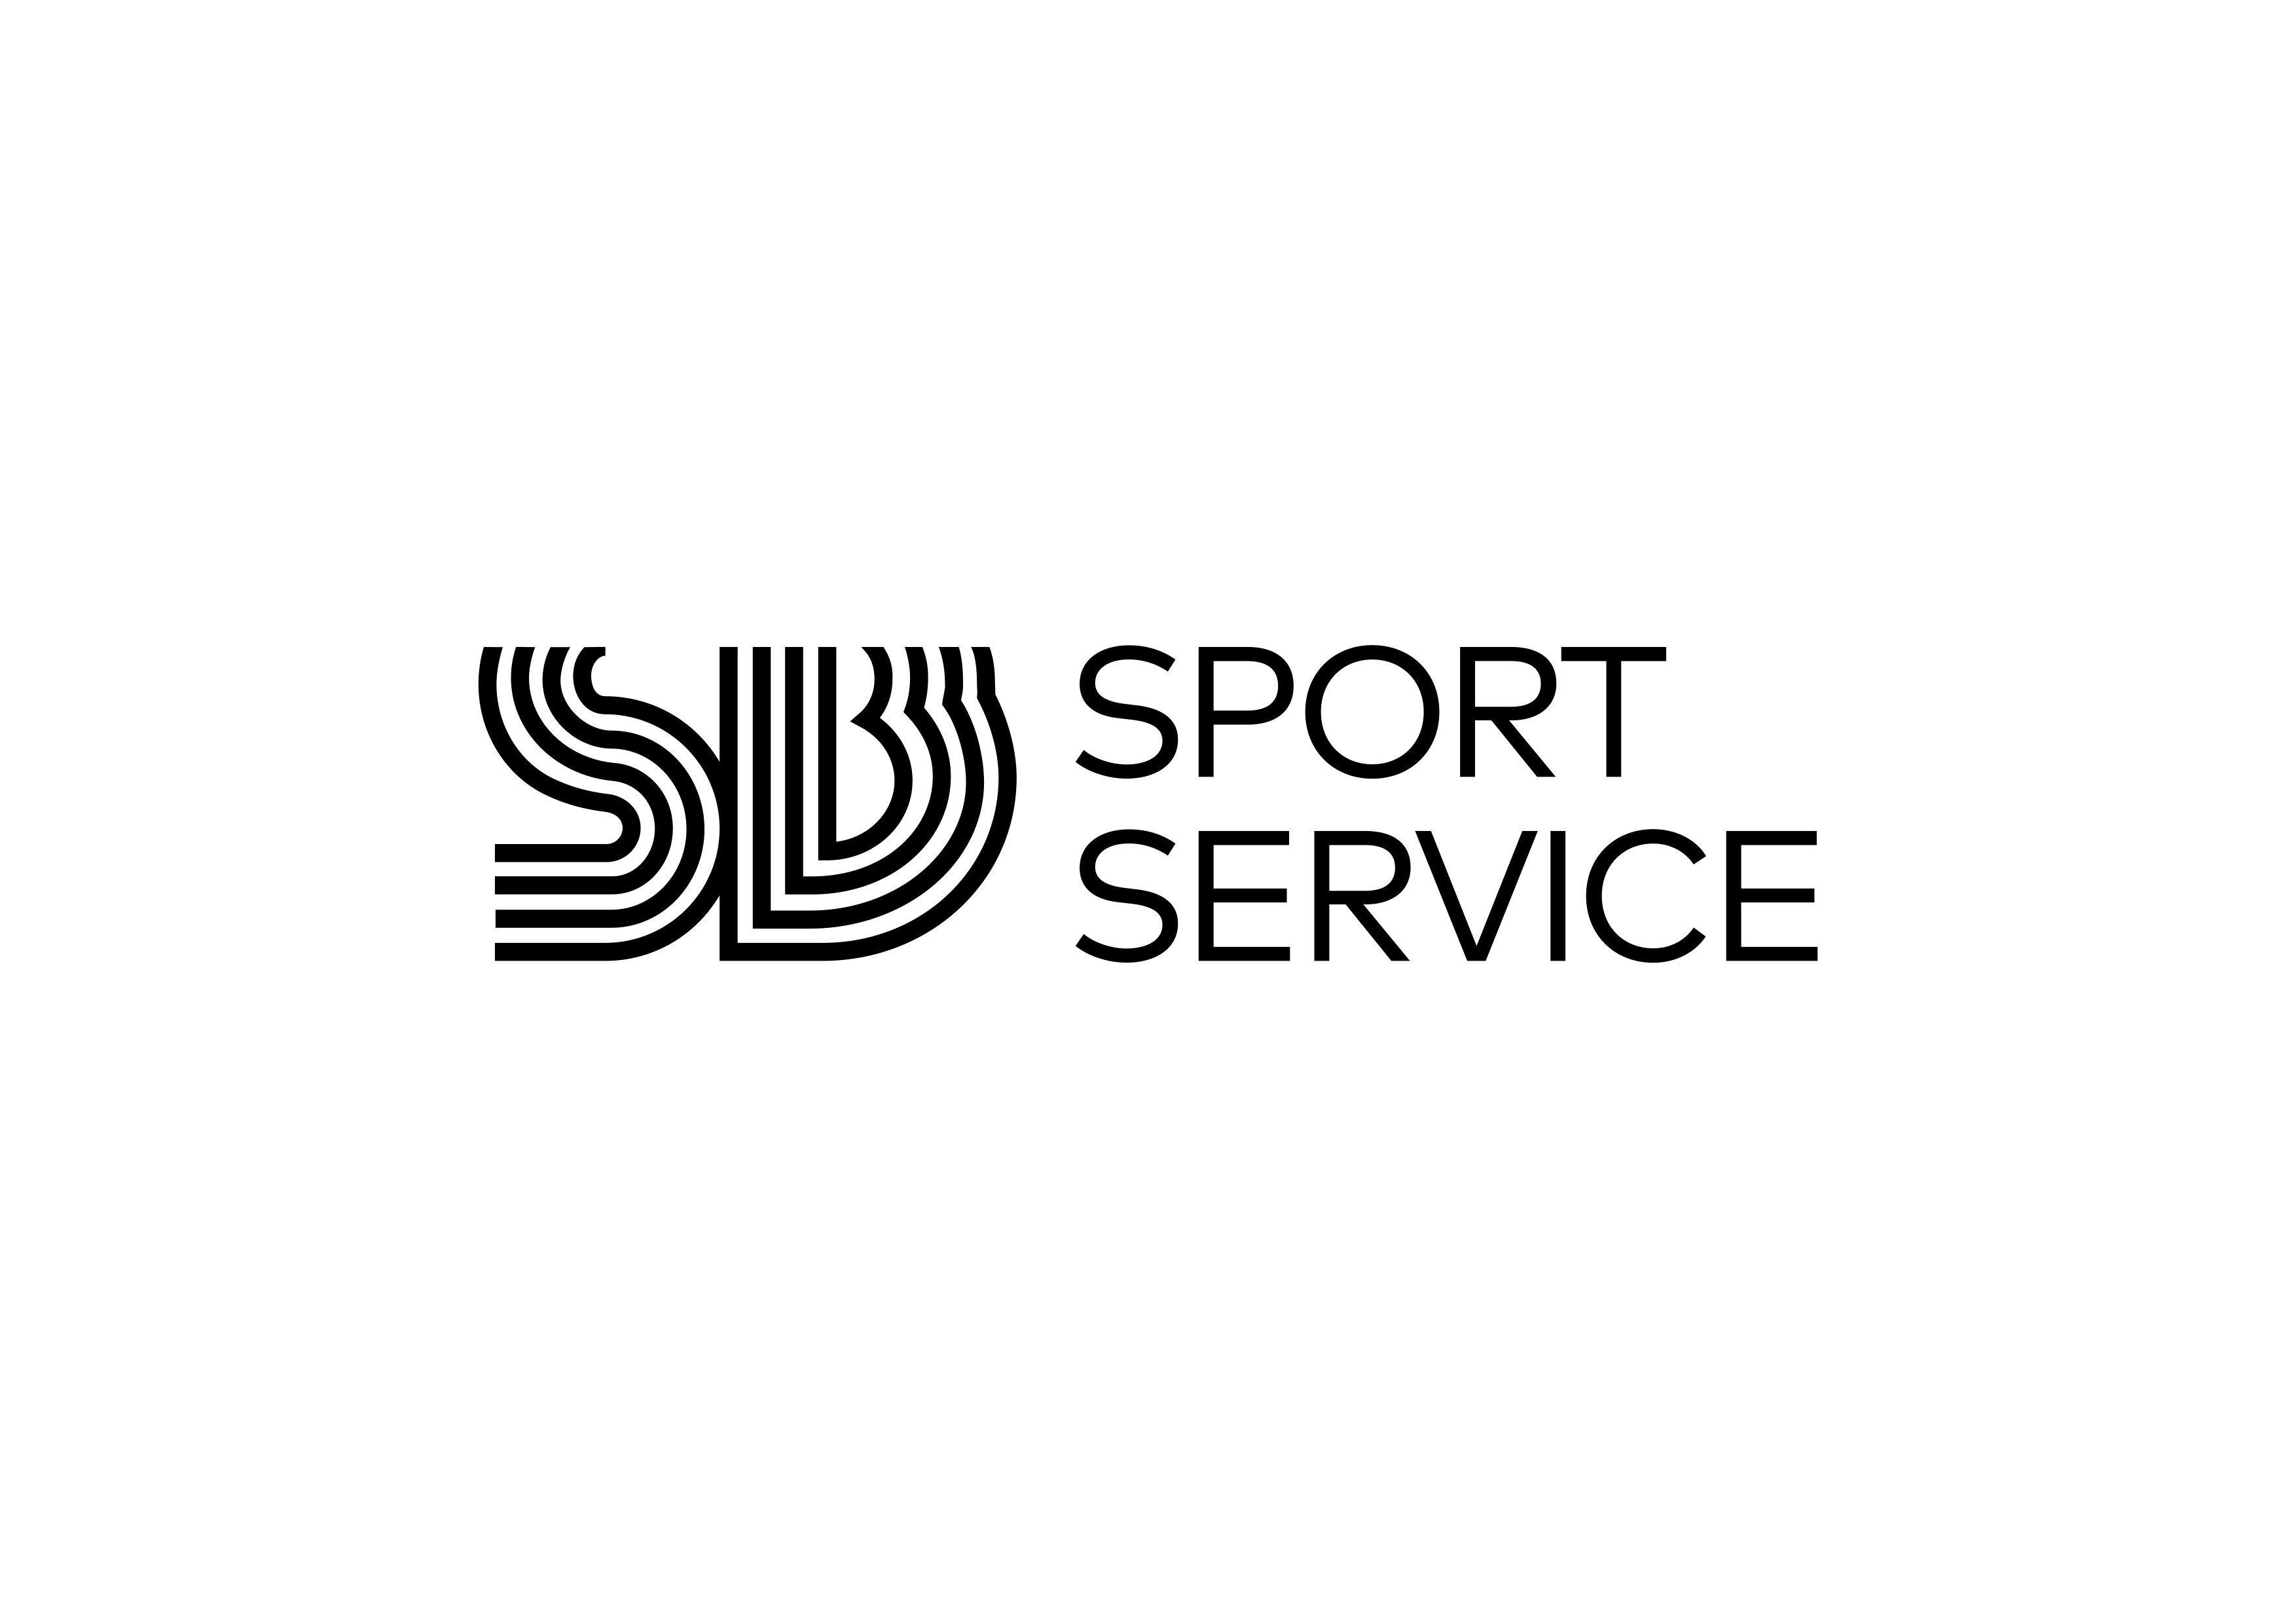 SB sports